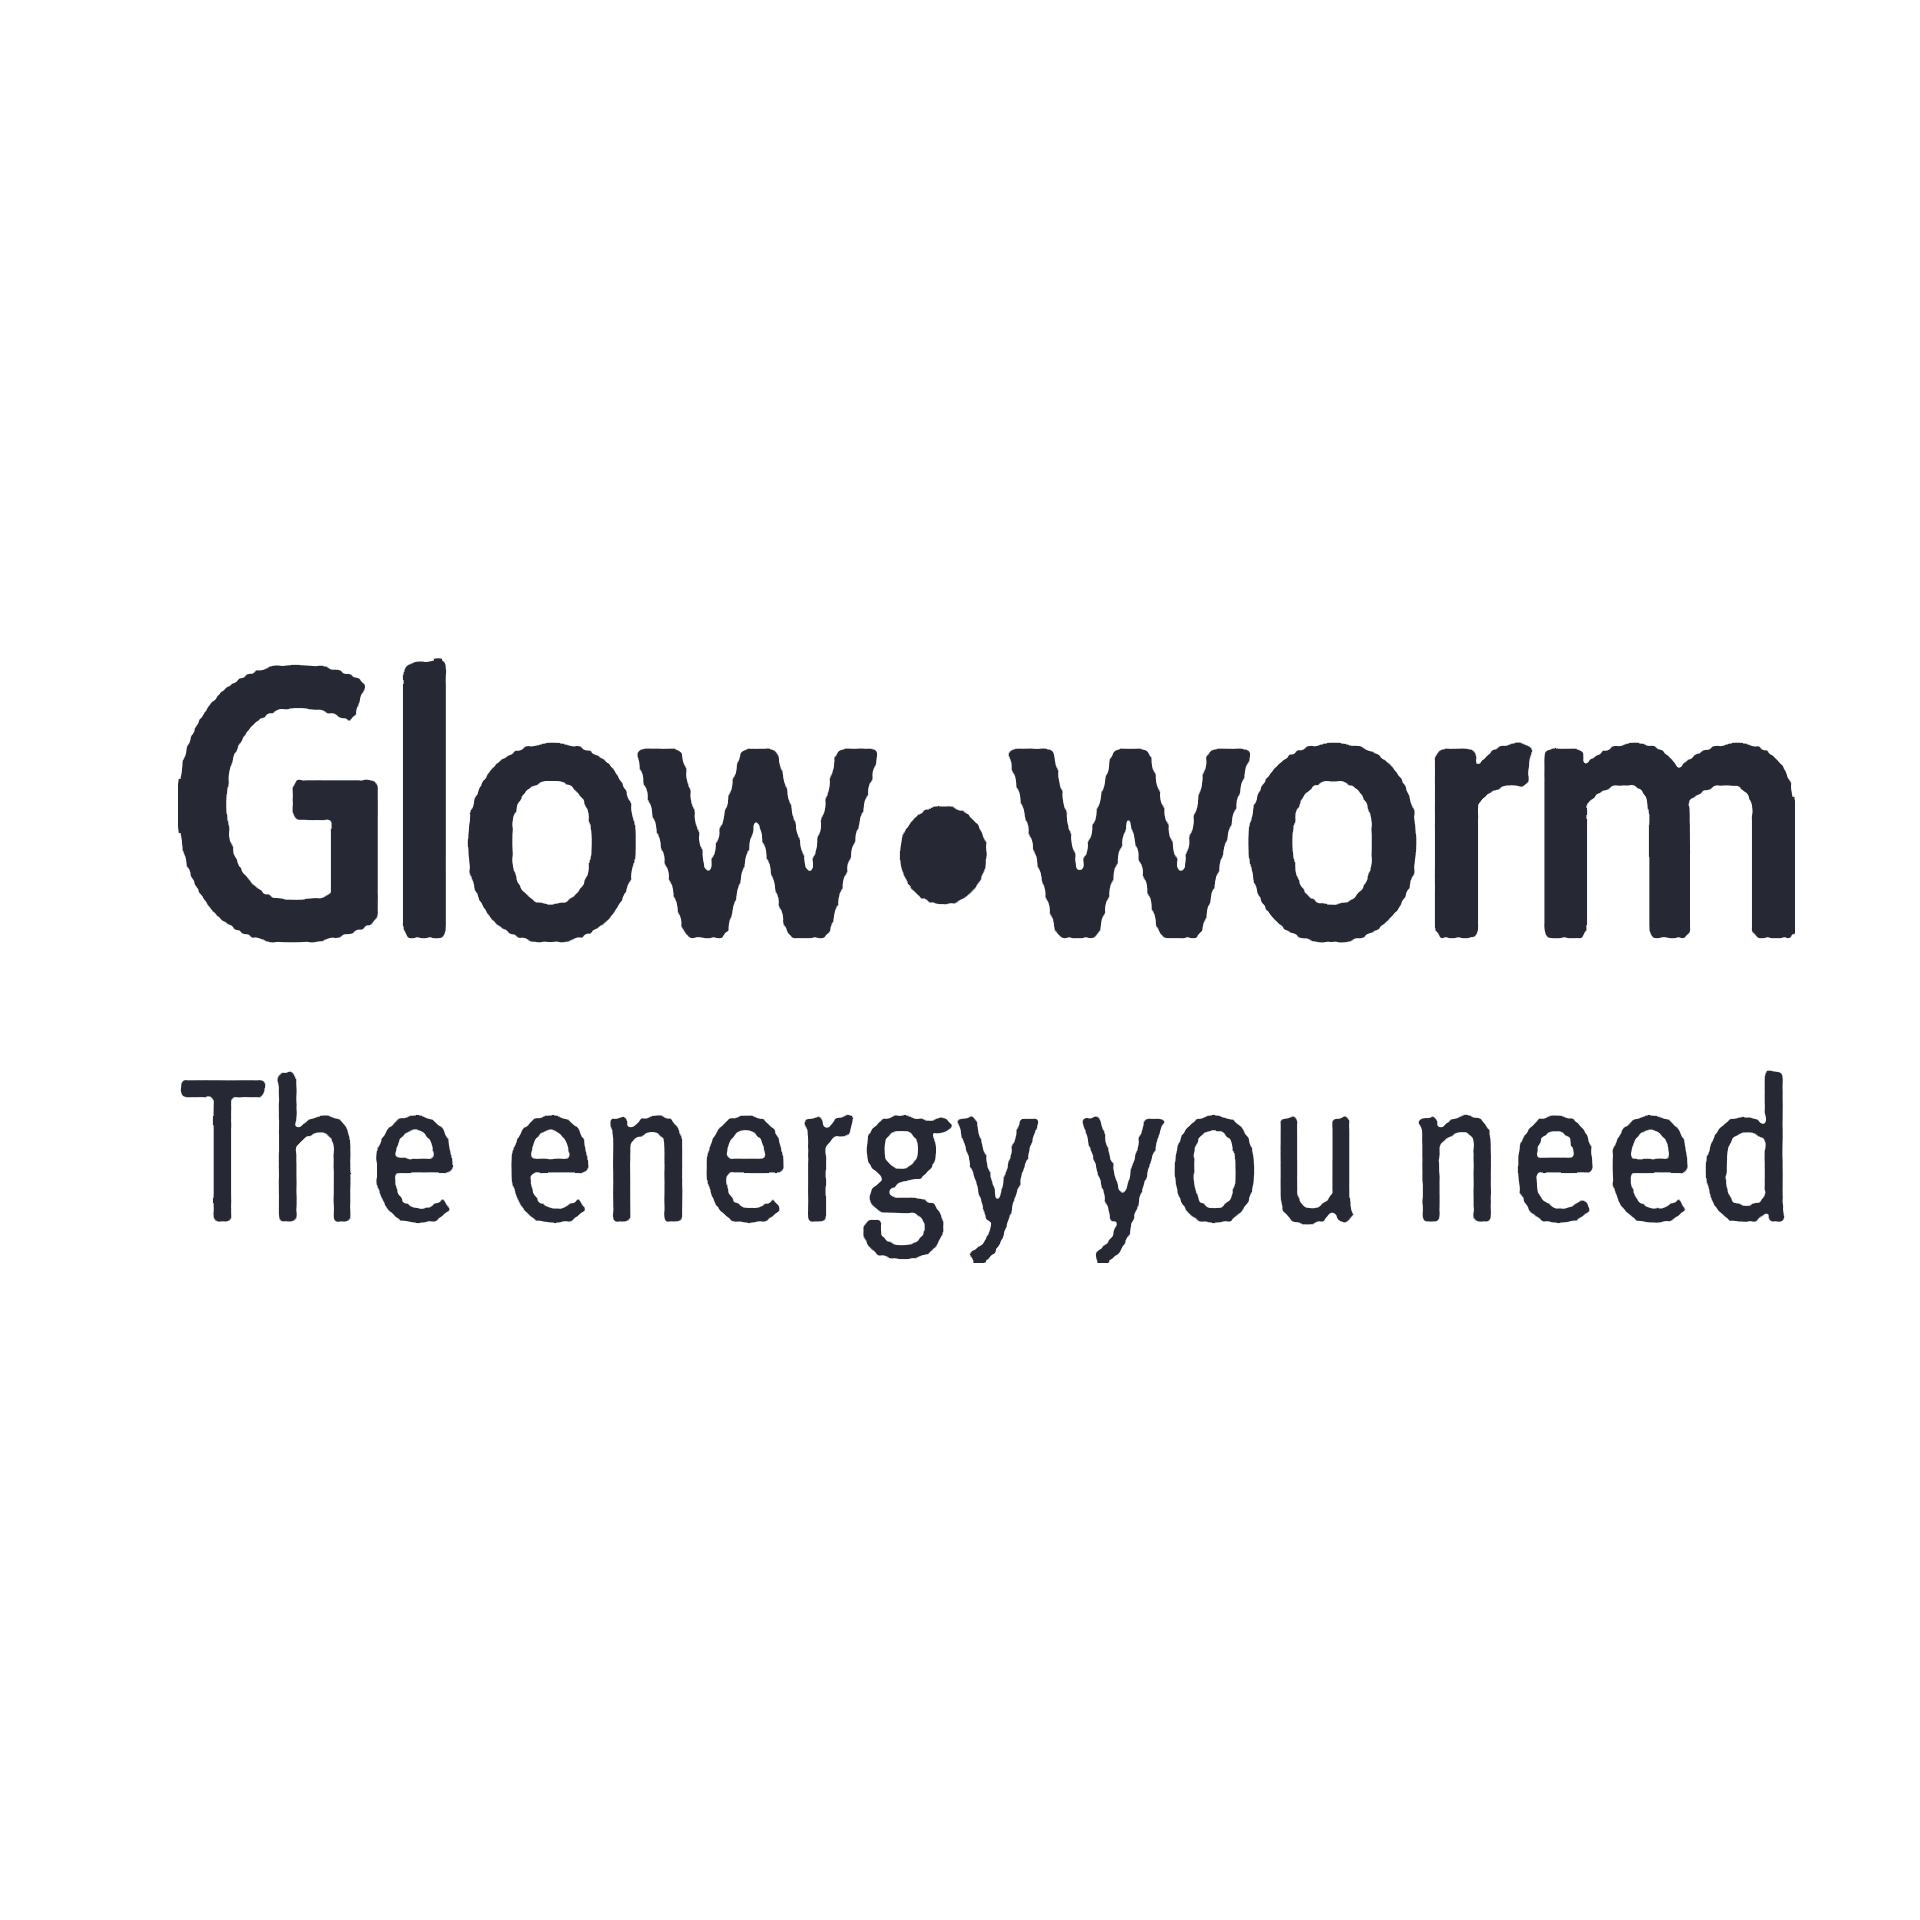 Glow Worm logo